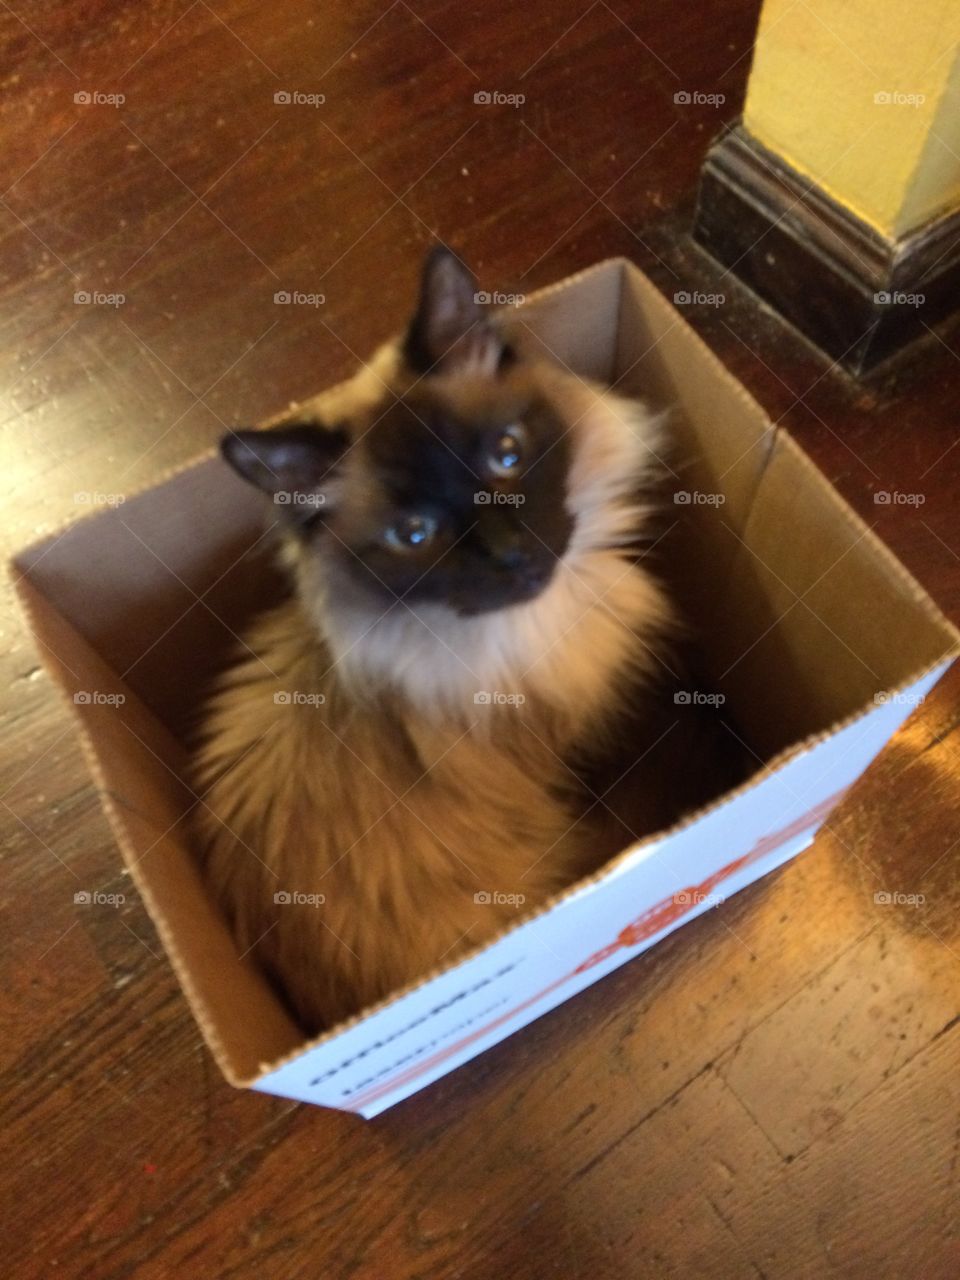  Cat in a box